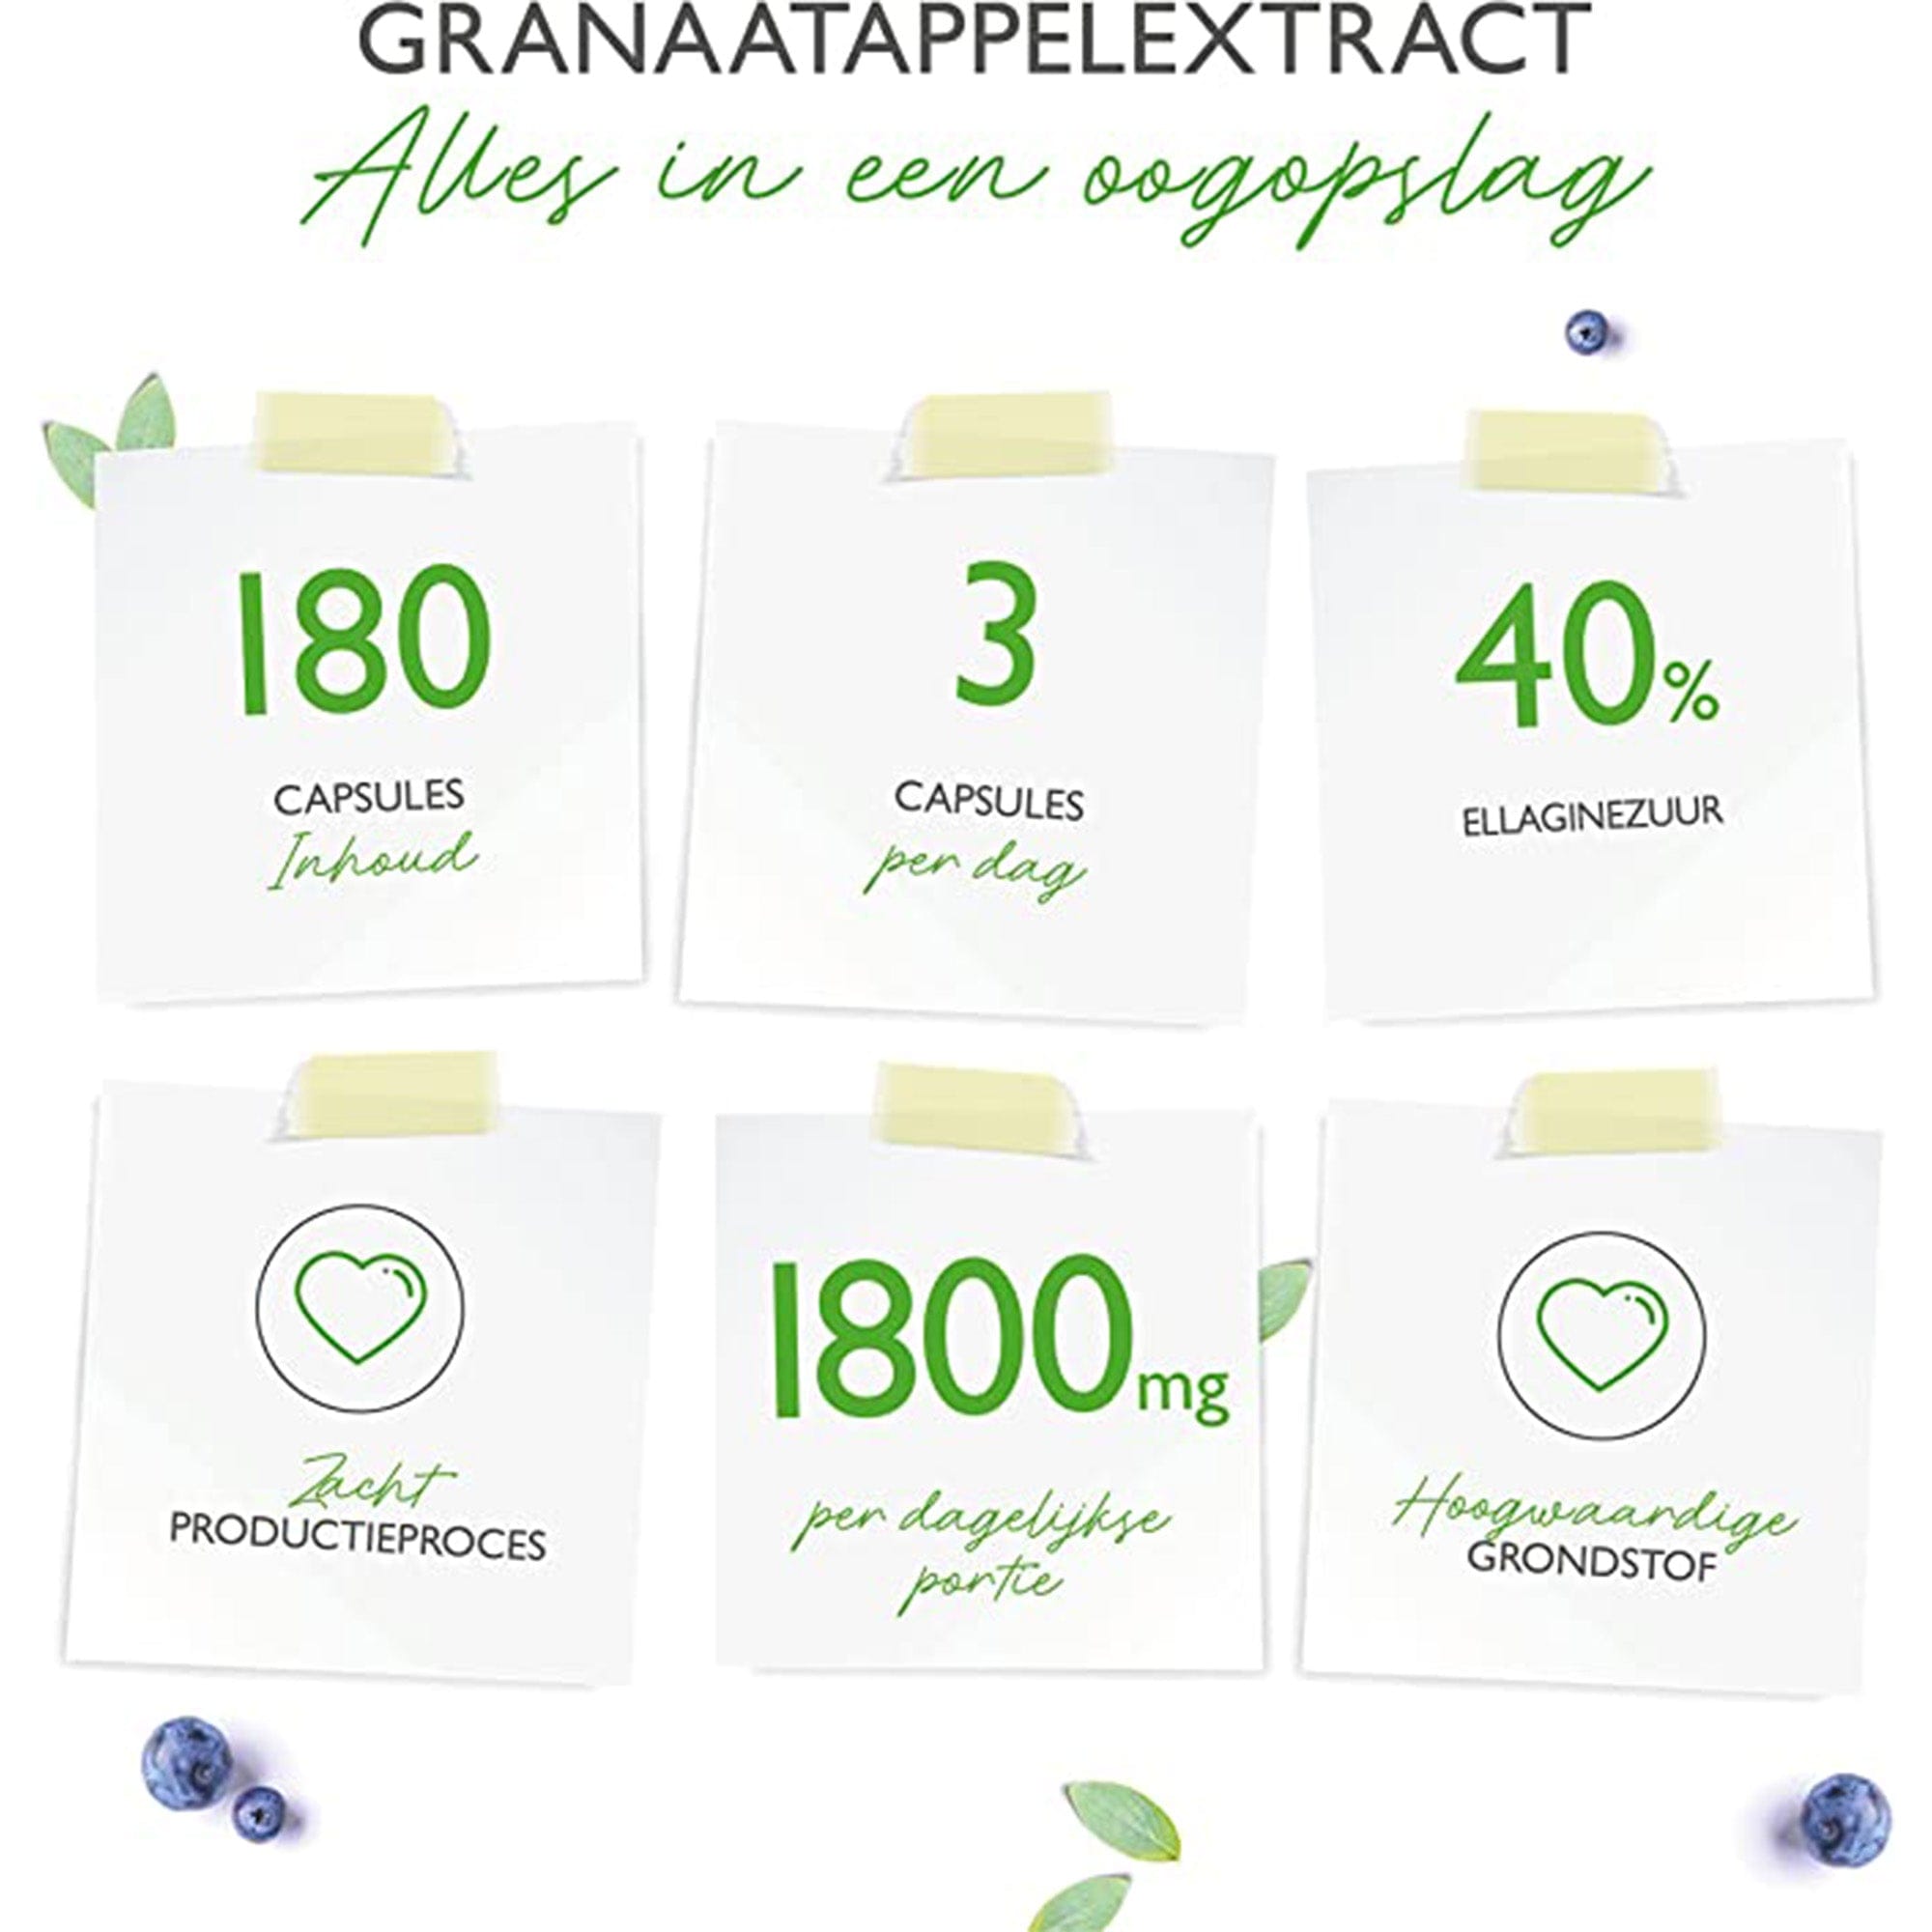 Vit4ever Granaatappelextract | 180 capsules | 1800 mg per dagdosering | Premium: 40% ellaginezuur | Hoog gedoseerd | Veganistisch